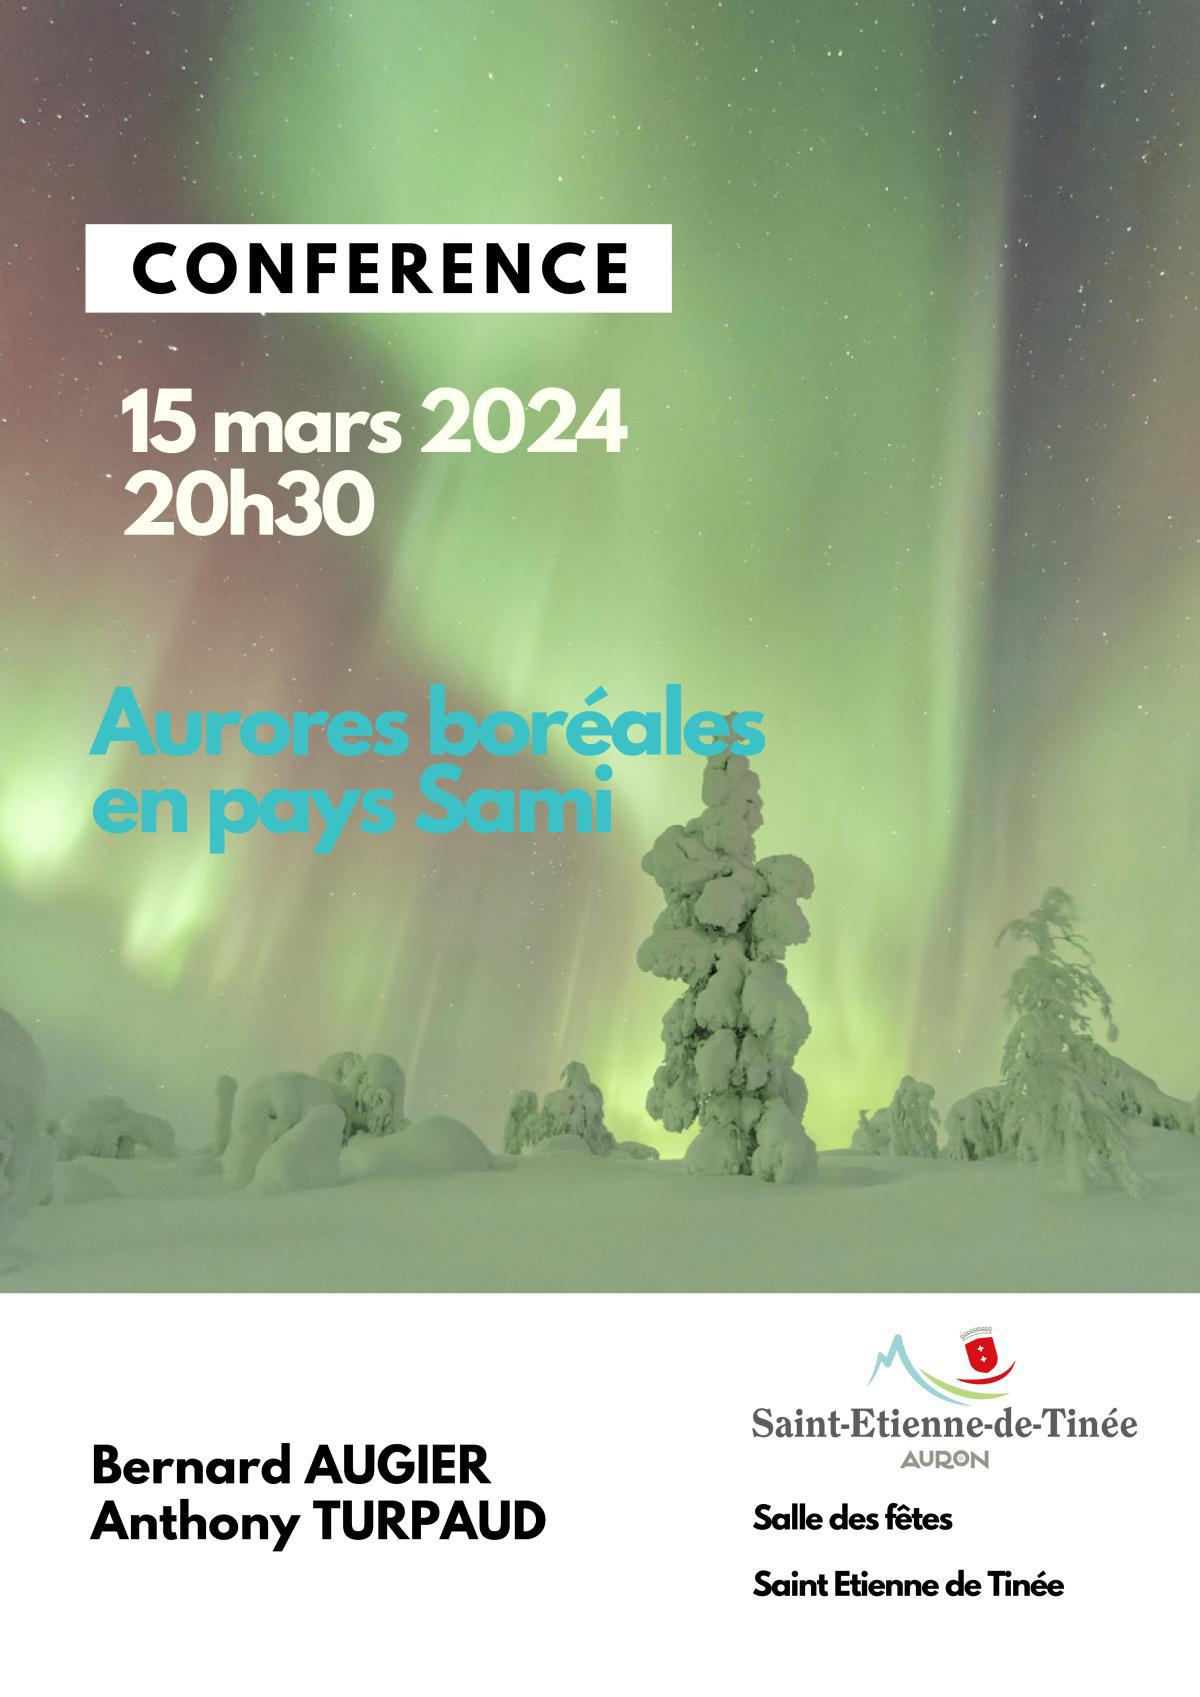 Conférence "Aurores boréales en pays Sami"